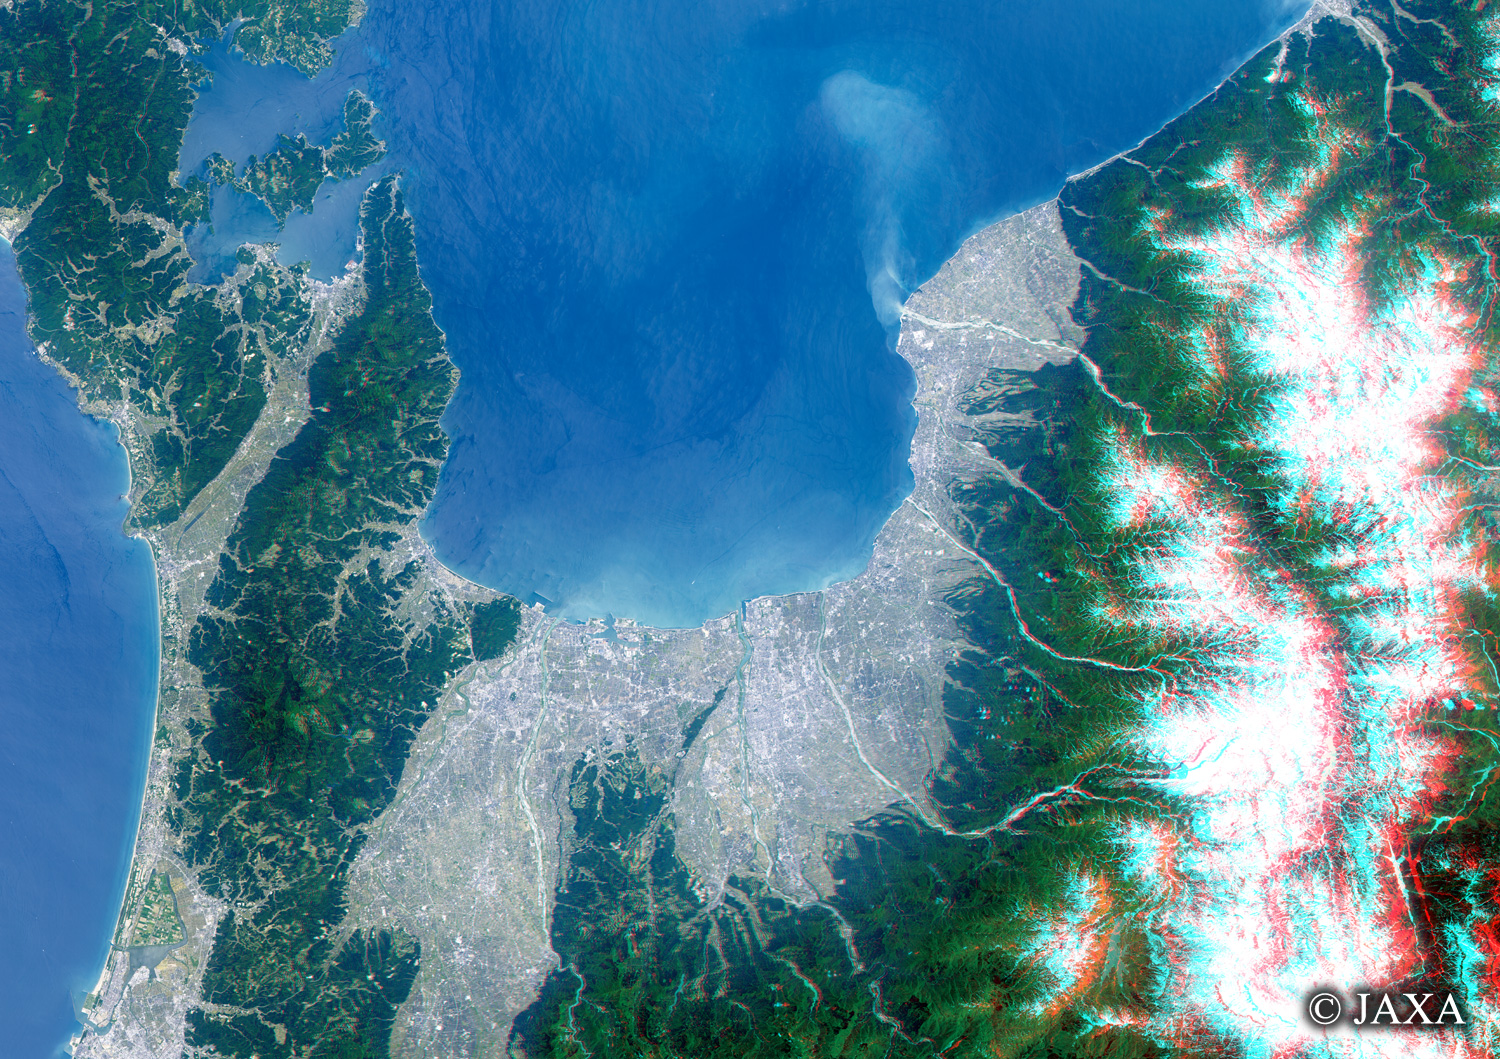 だいちから見た日本の都市 石川県・富山県立体視画像:衛星画像